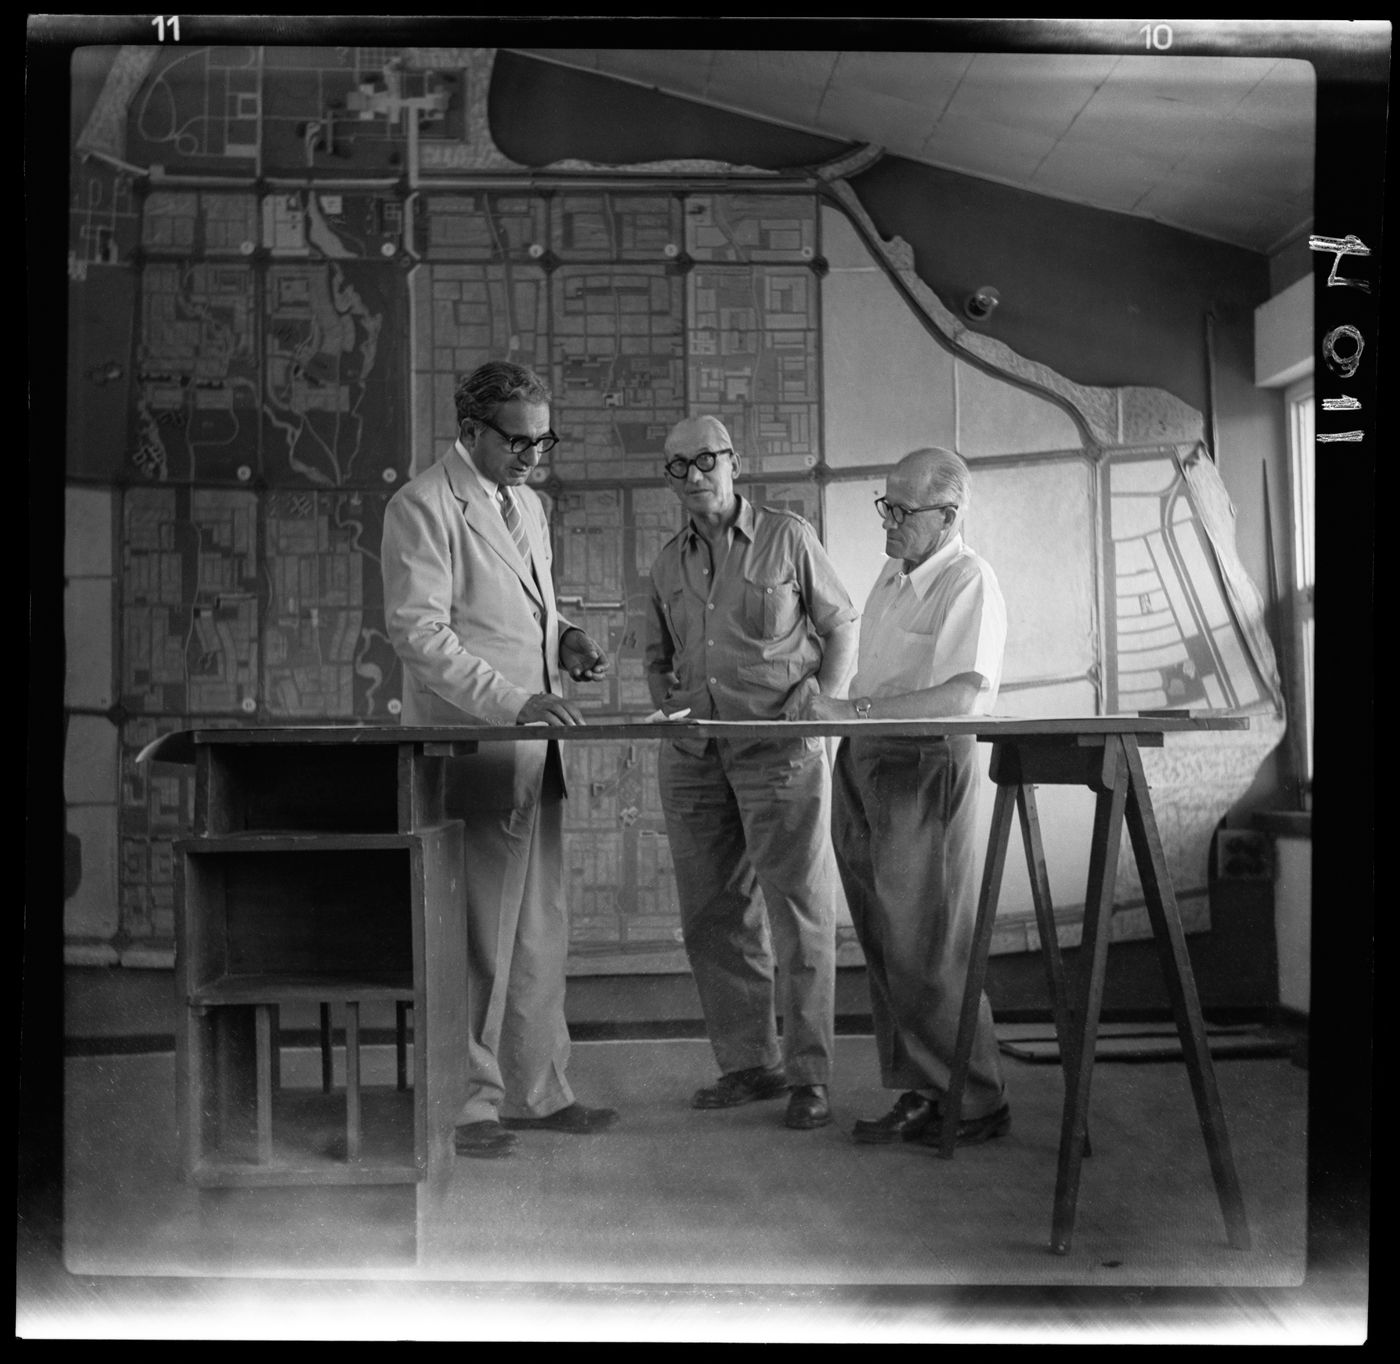 P.L. Varma, Le Corbusier and Pierre Jeanneret